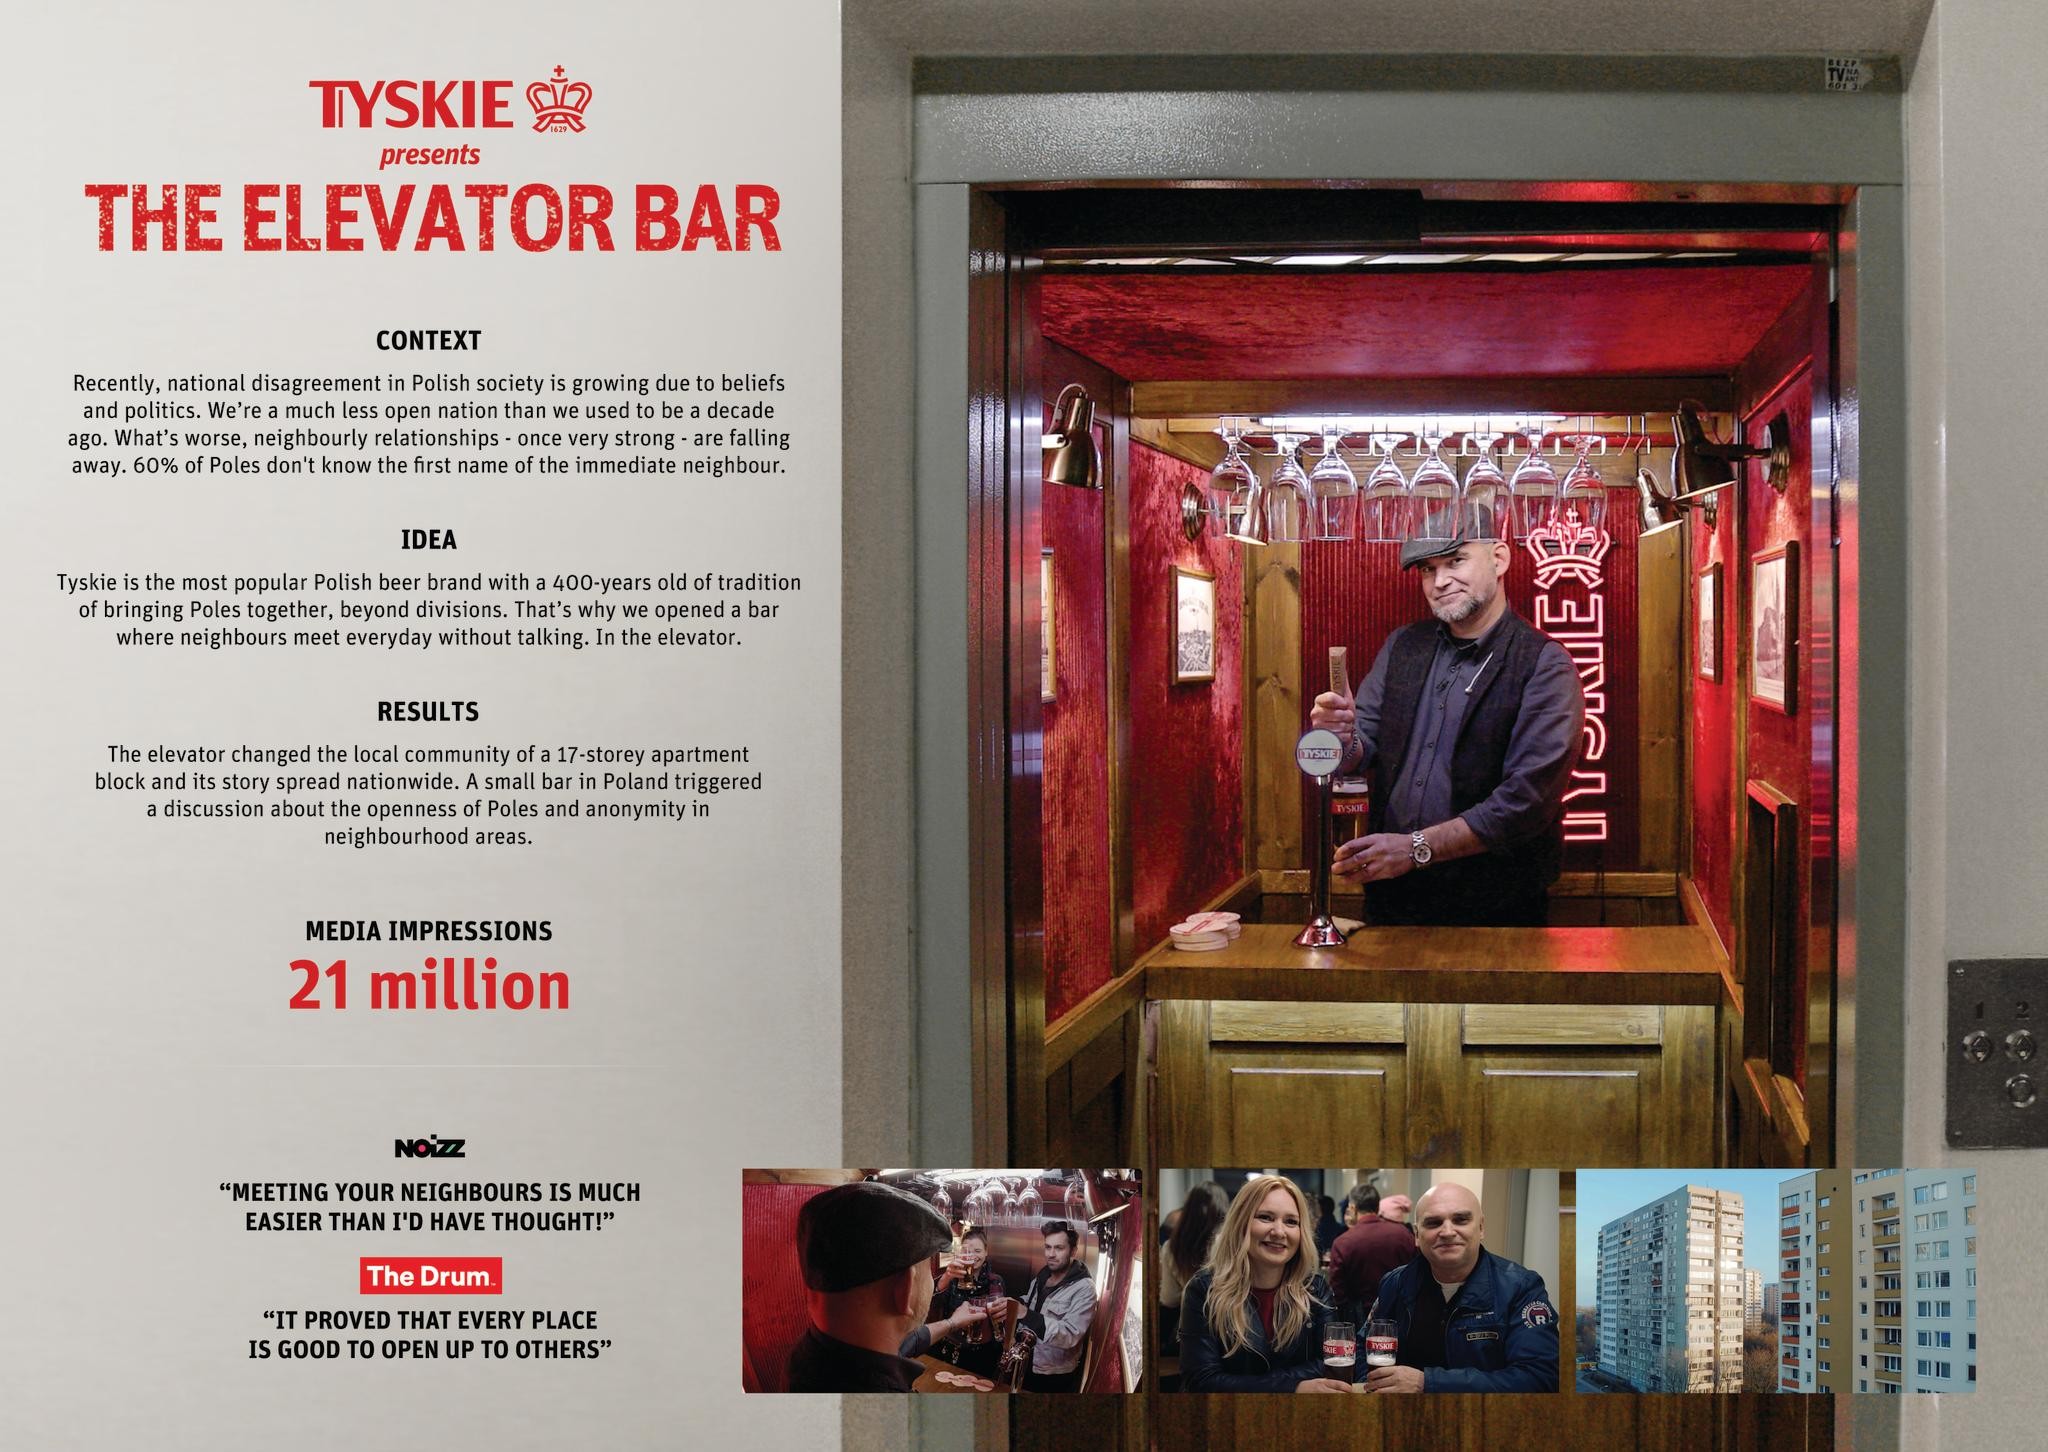 TYSKIE'S ELEVATOR